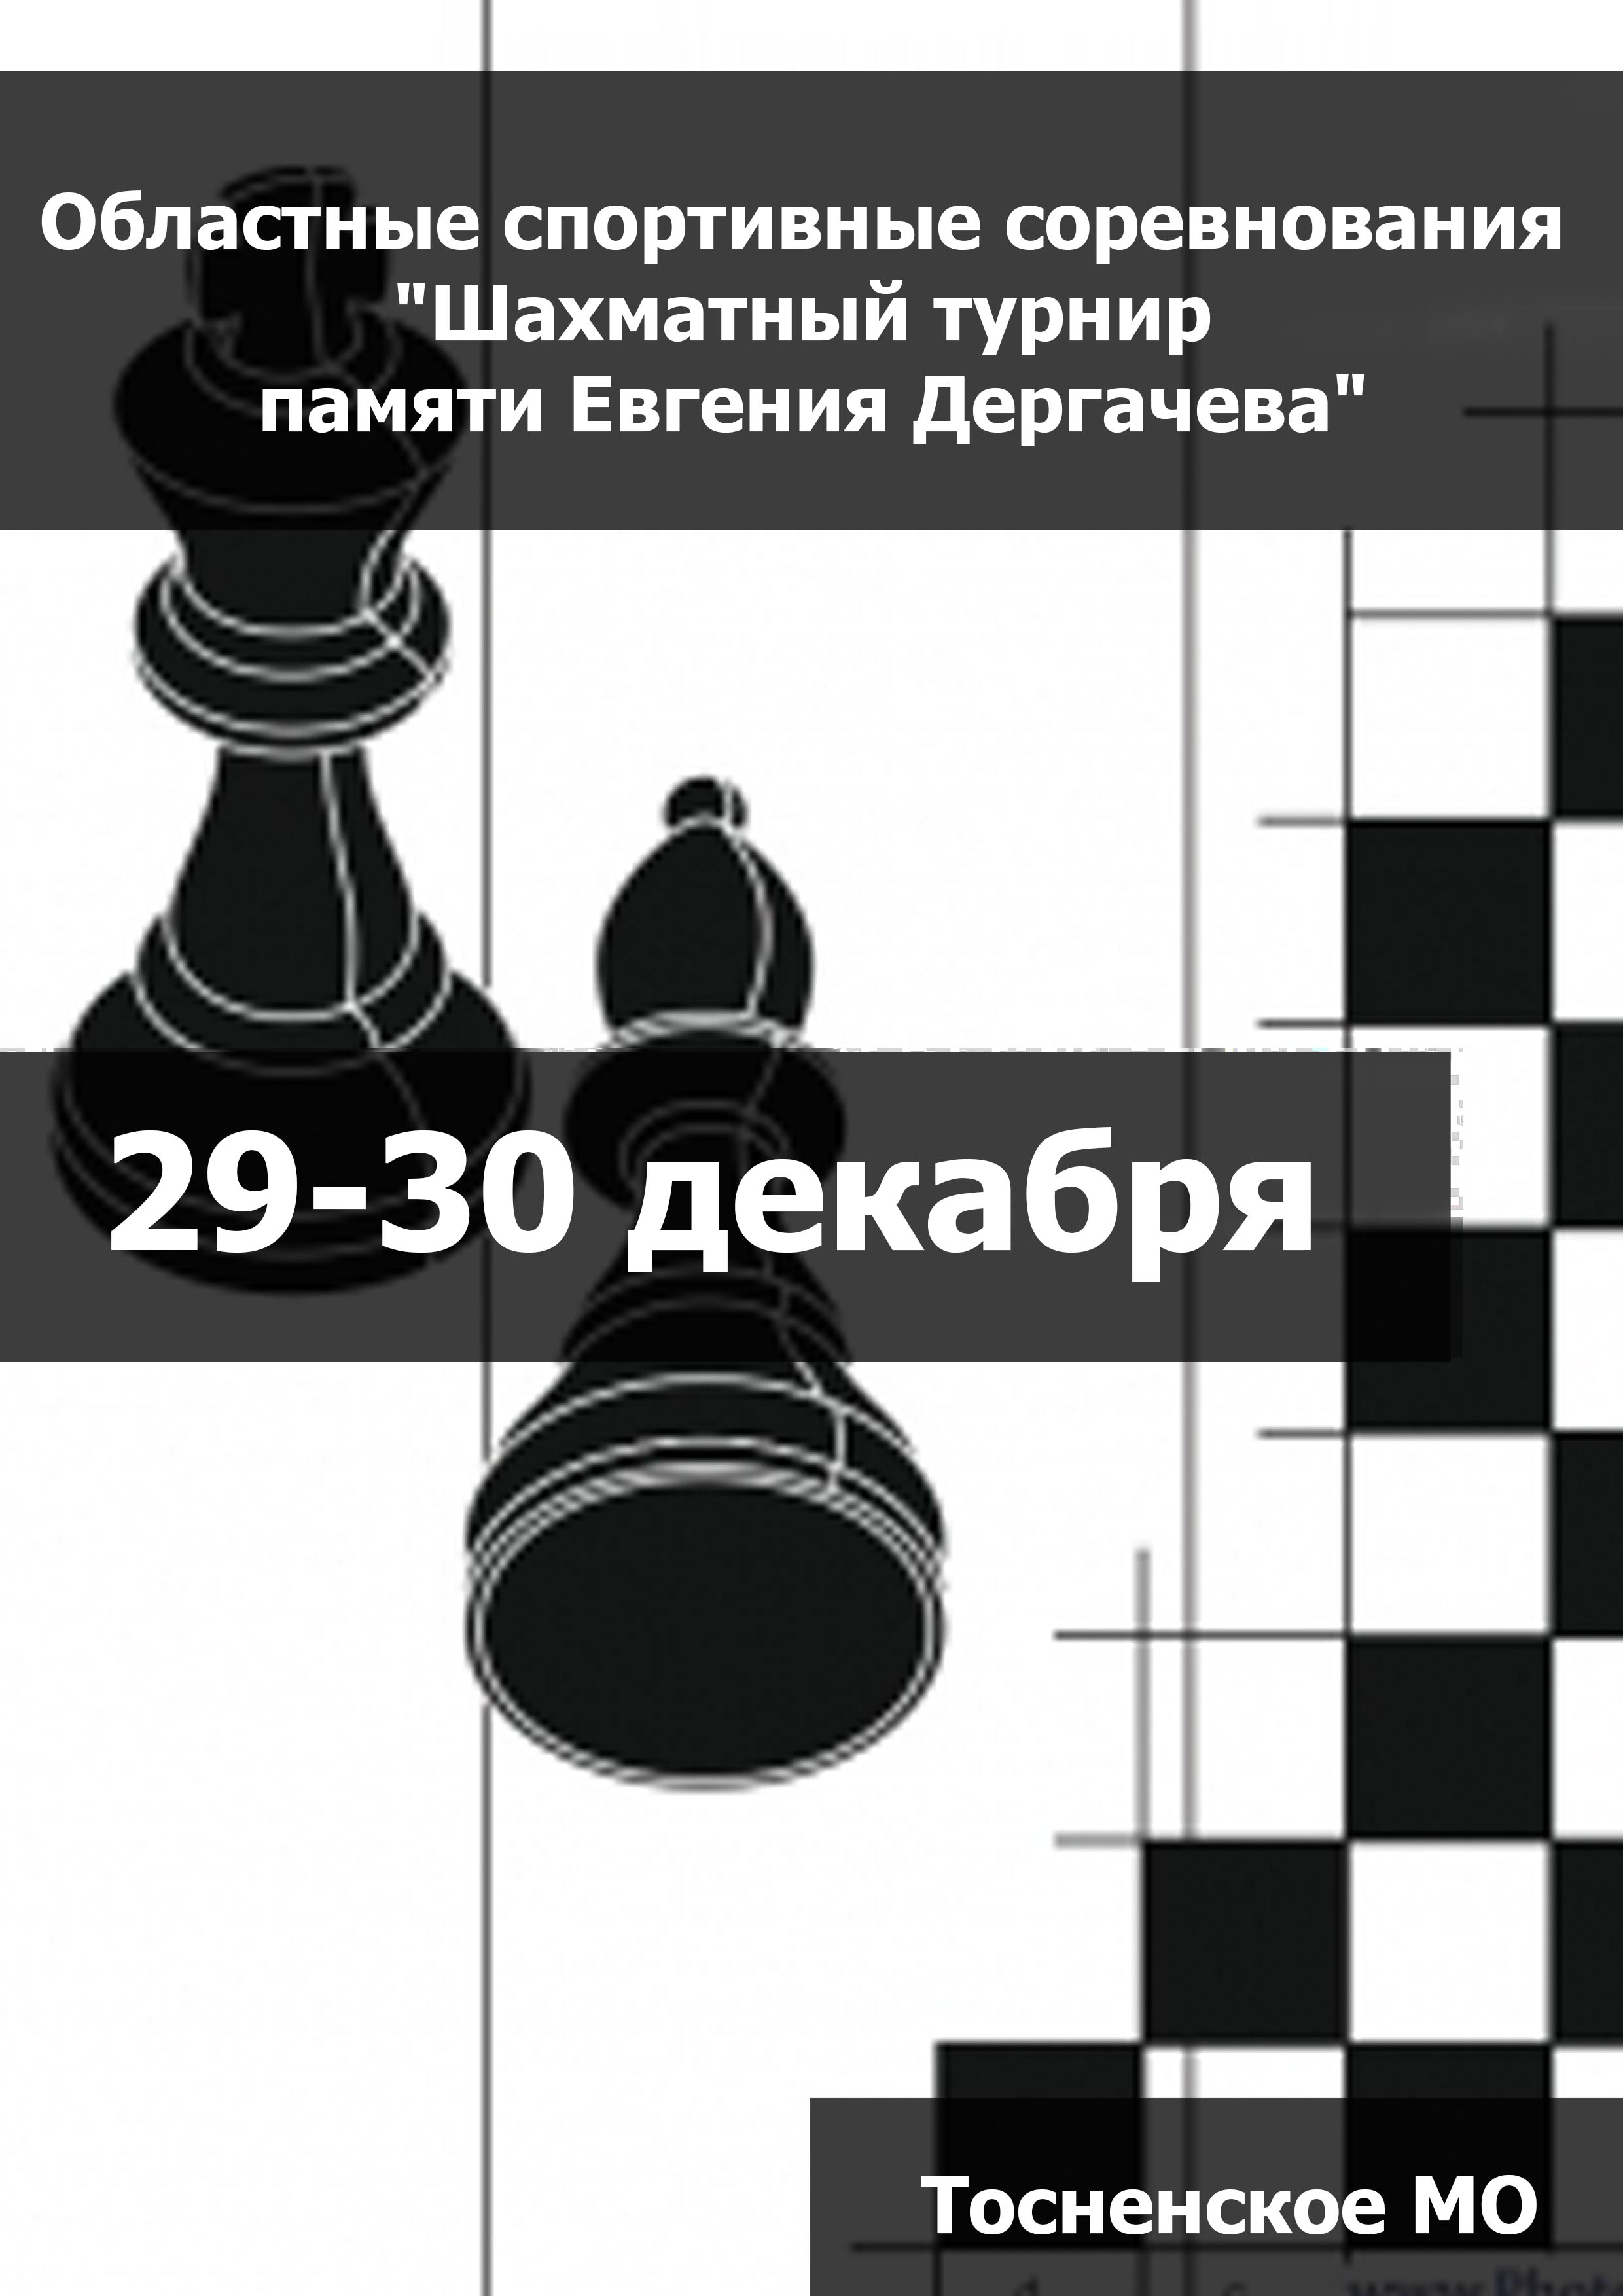 Областные спортивные соревнования "Шахматный турнир памяти Евгения Дергачева" 29  դեկտեմբերի
 2023  տարի
 